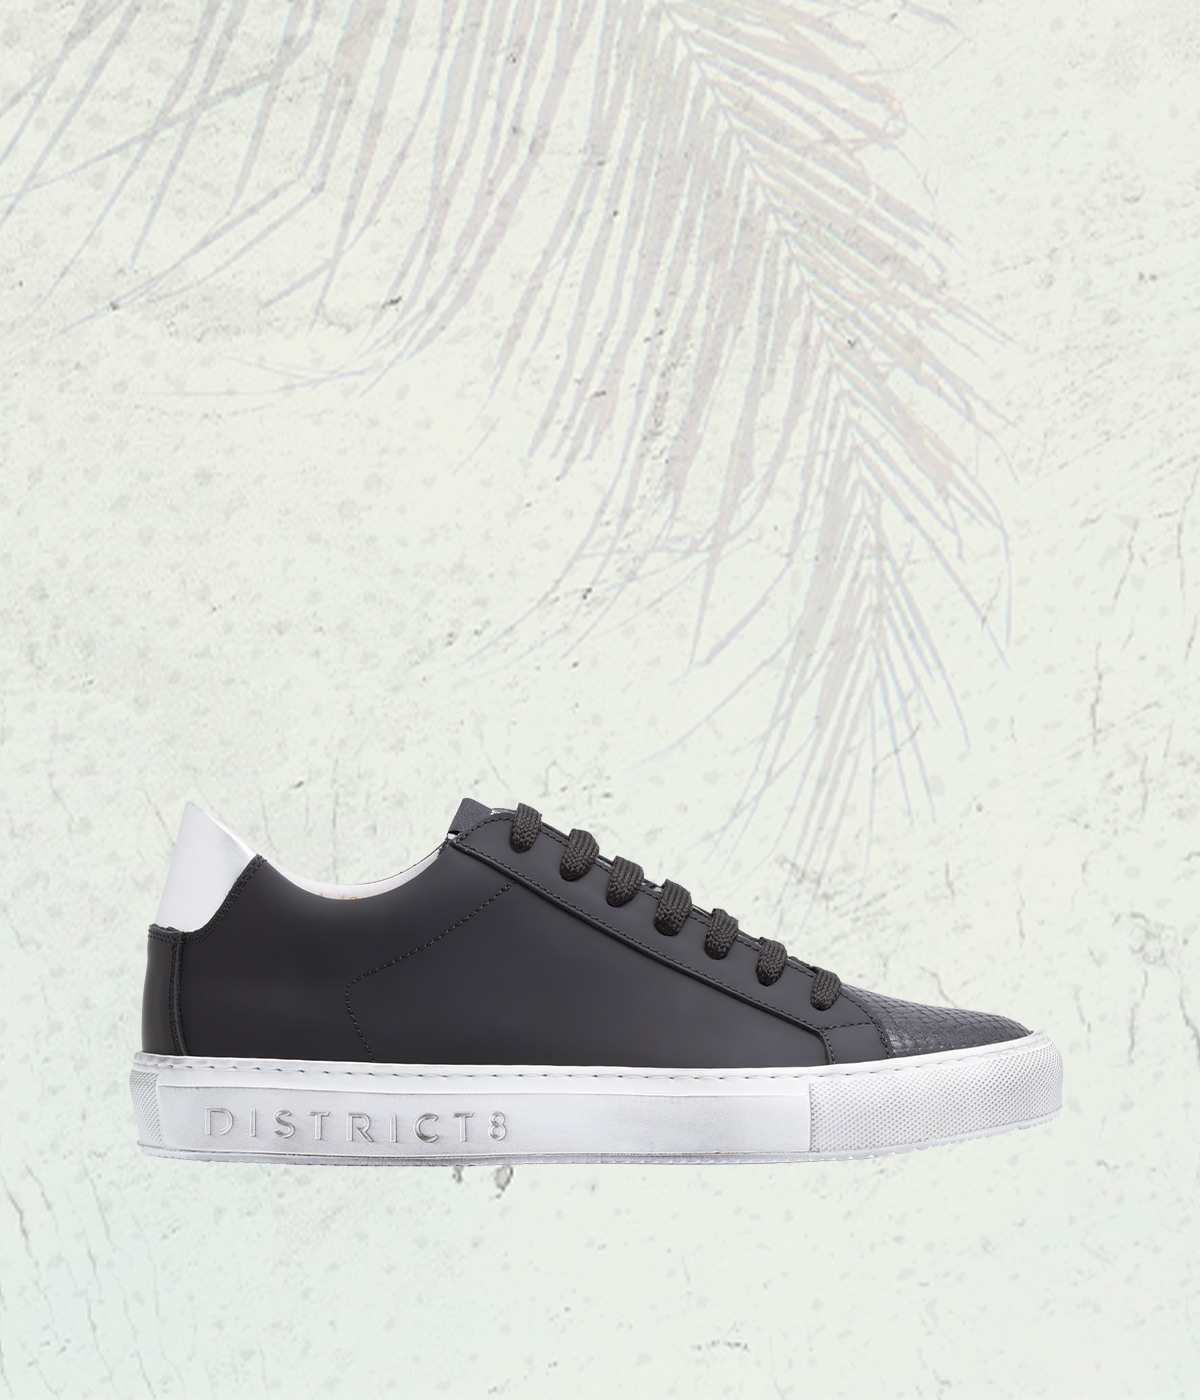 DISTRICT8 - Sneakers Wet Paint (843) in pelle gommata nera, punta in rettile stampato e logo laserizzato